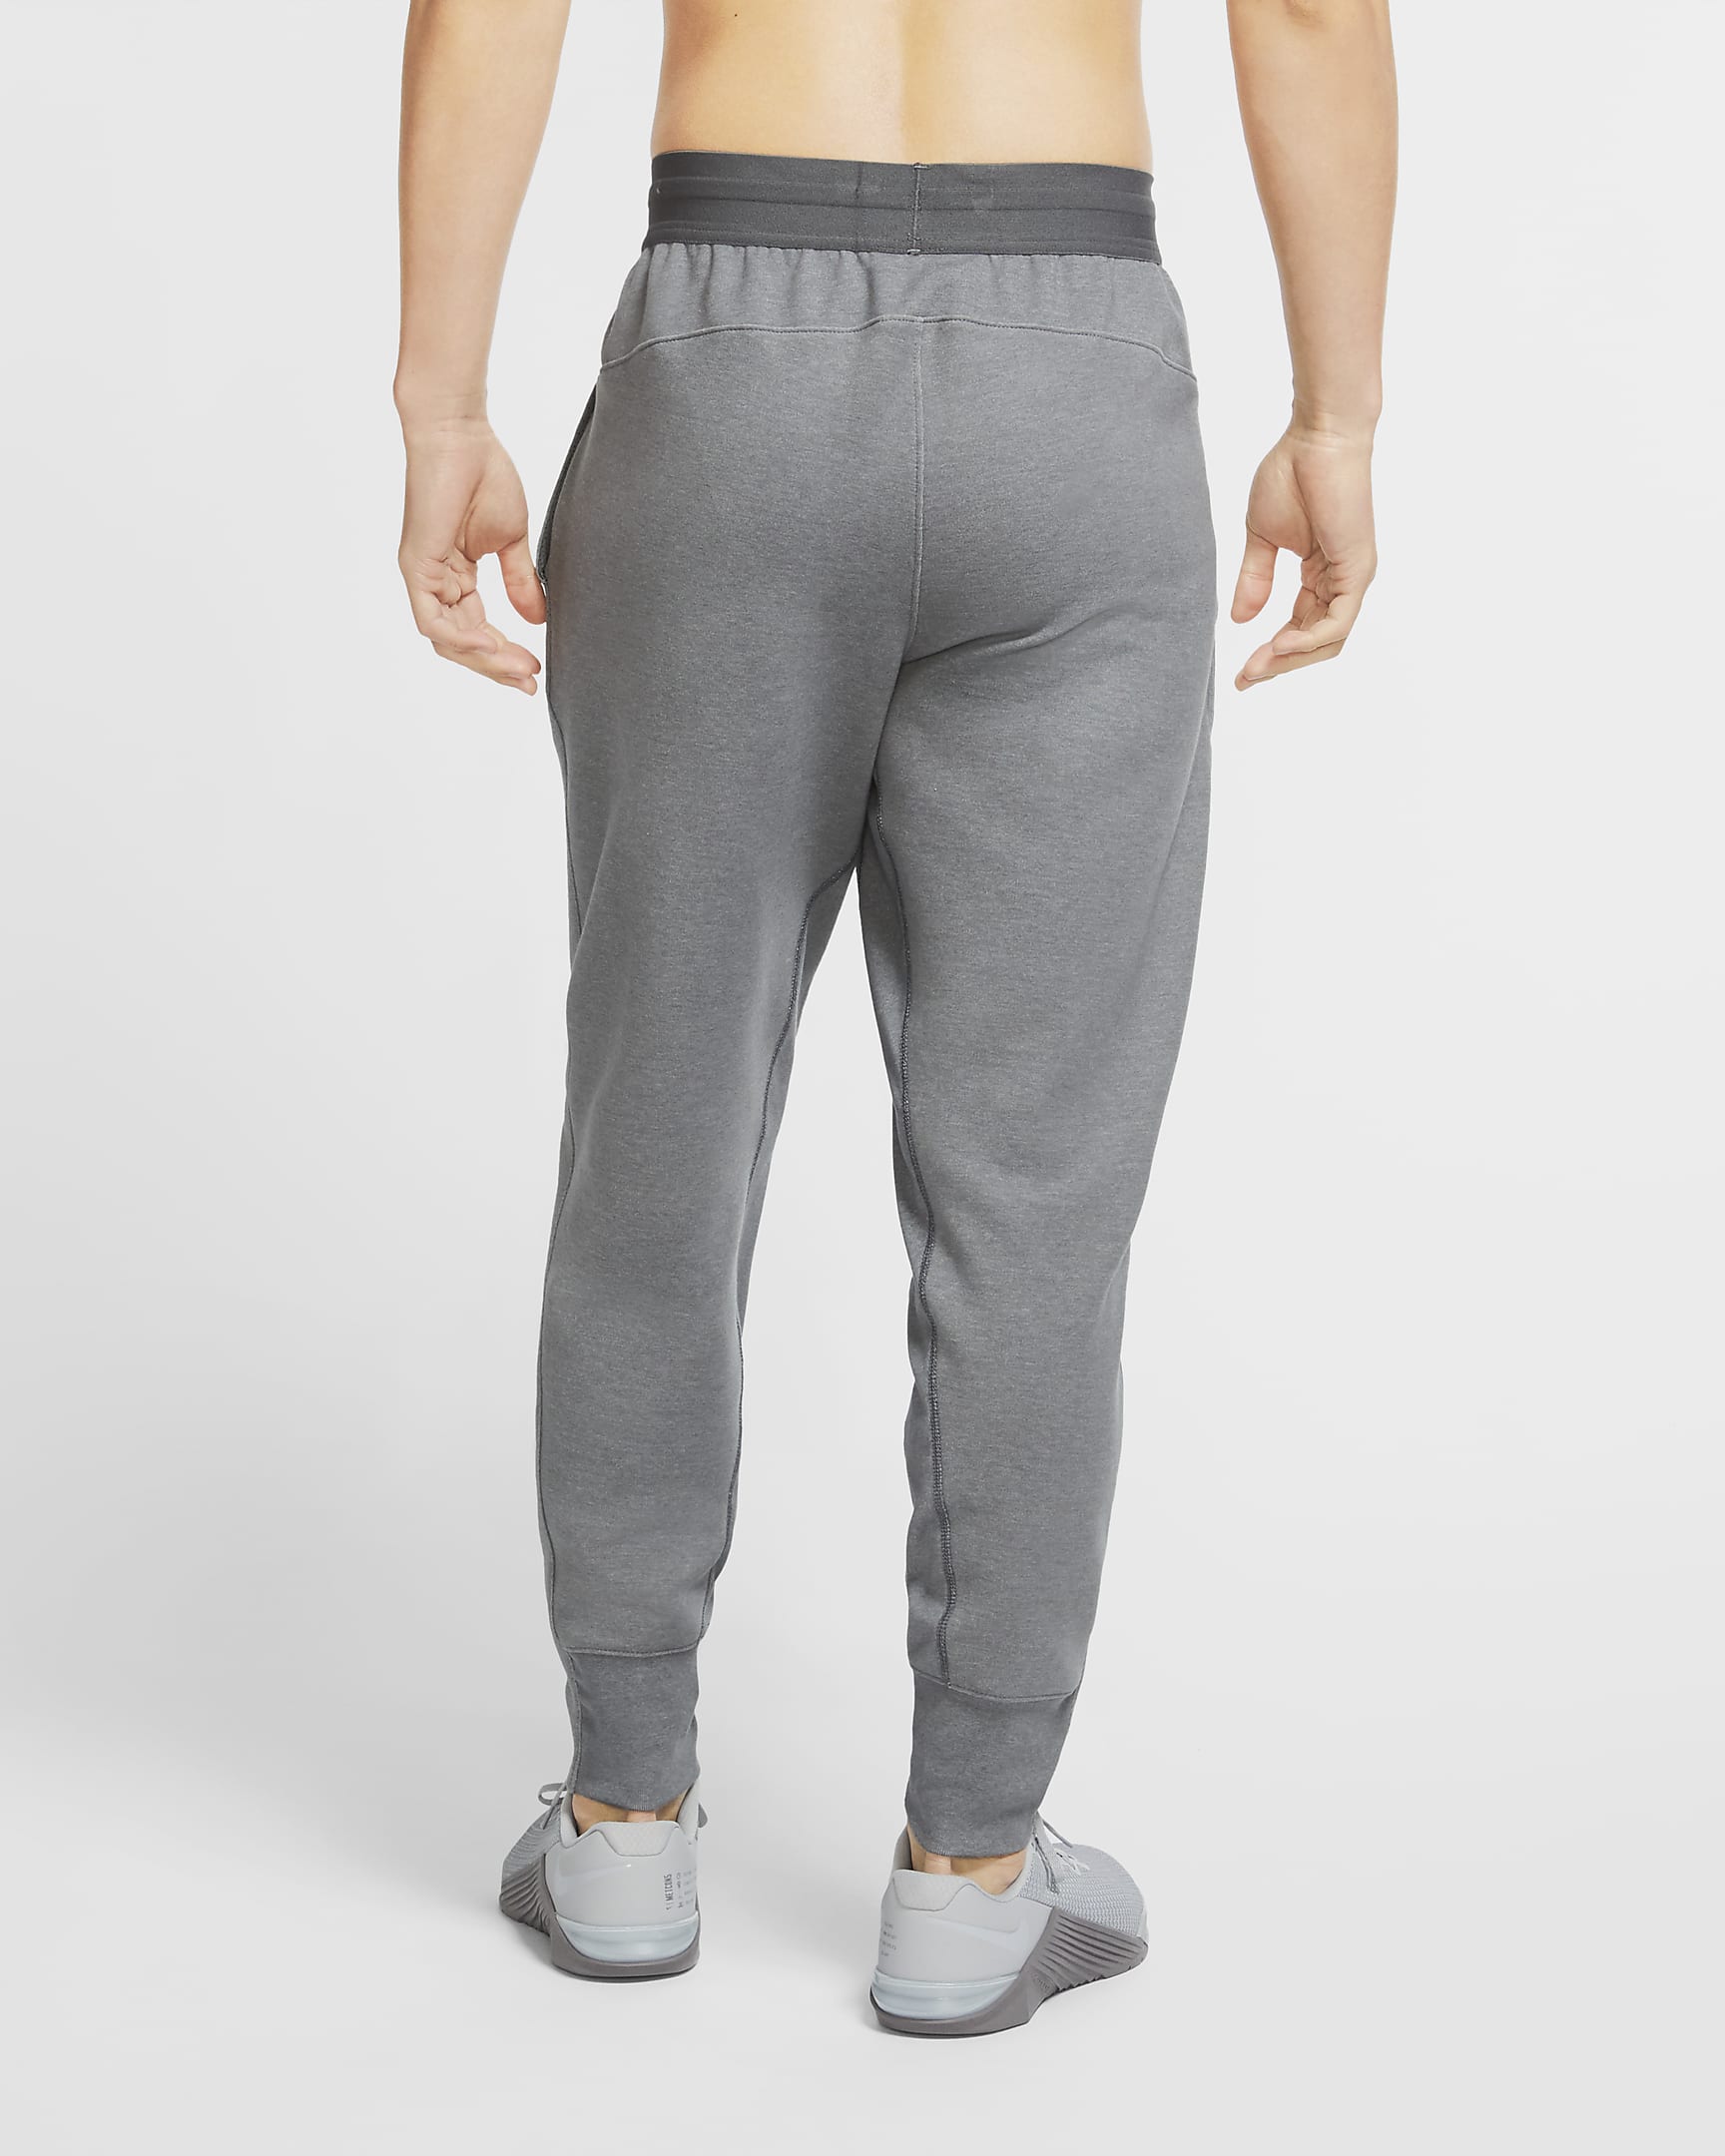 Nike Yoga Men's Pants. Nike.com